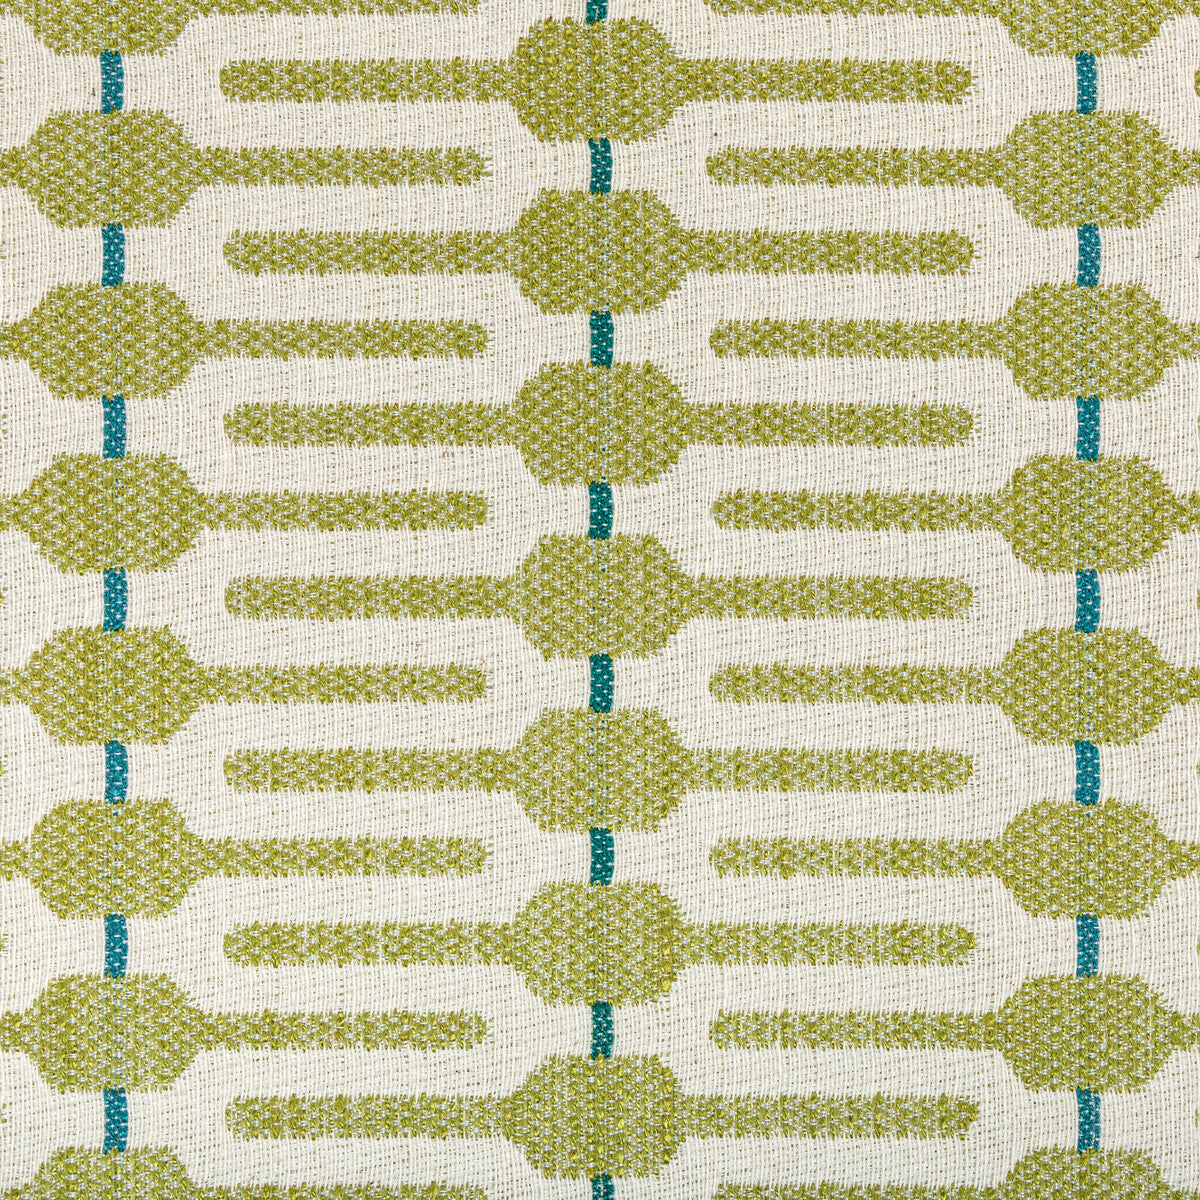 Kravet Design fabric in 36681-335 color - pattern 36681.335.0 - by Kravet Design